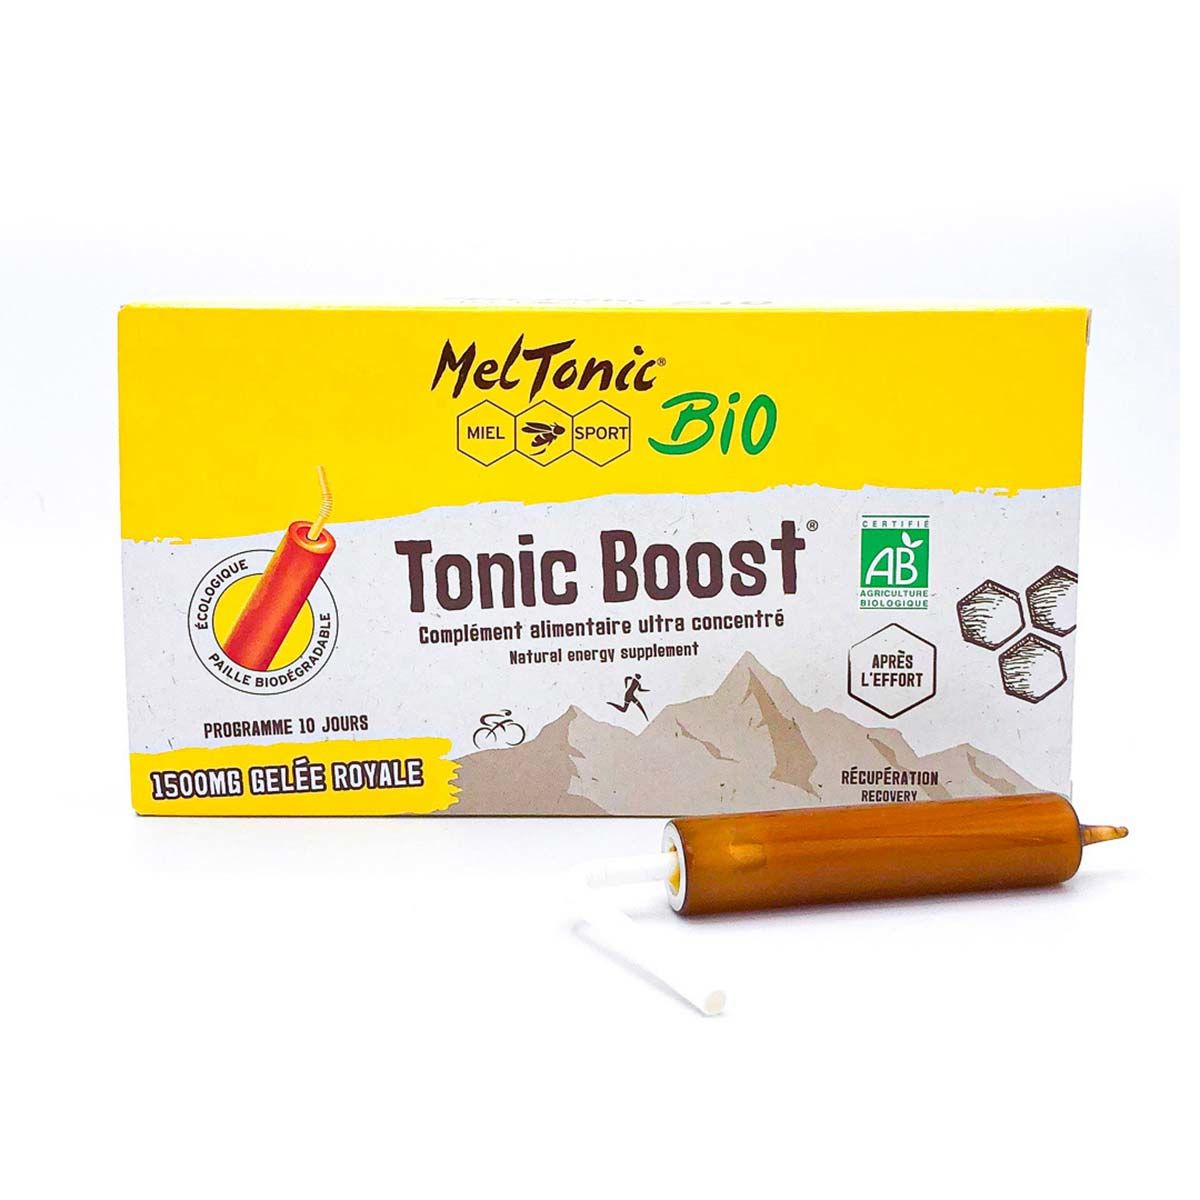 Meltonic Tonic Boost bio - Miel, propolis verte et gelée royale